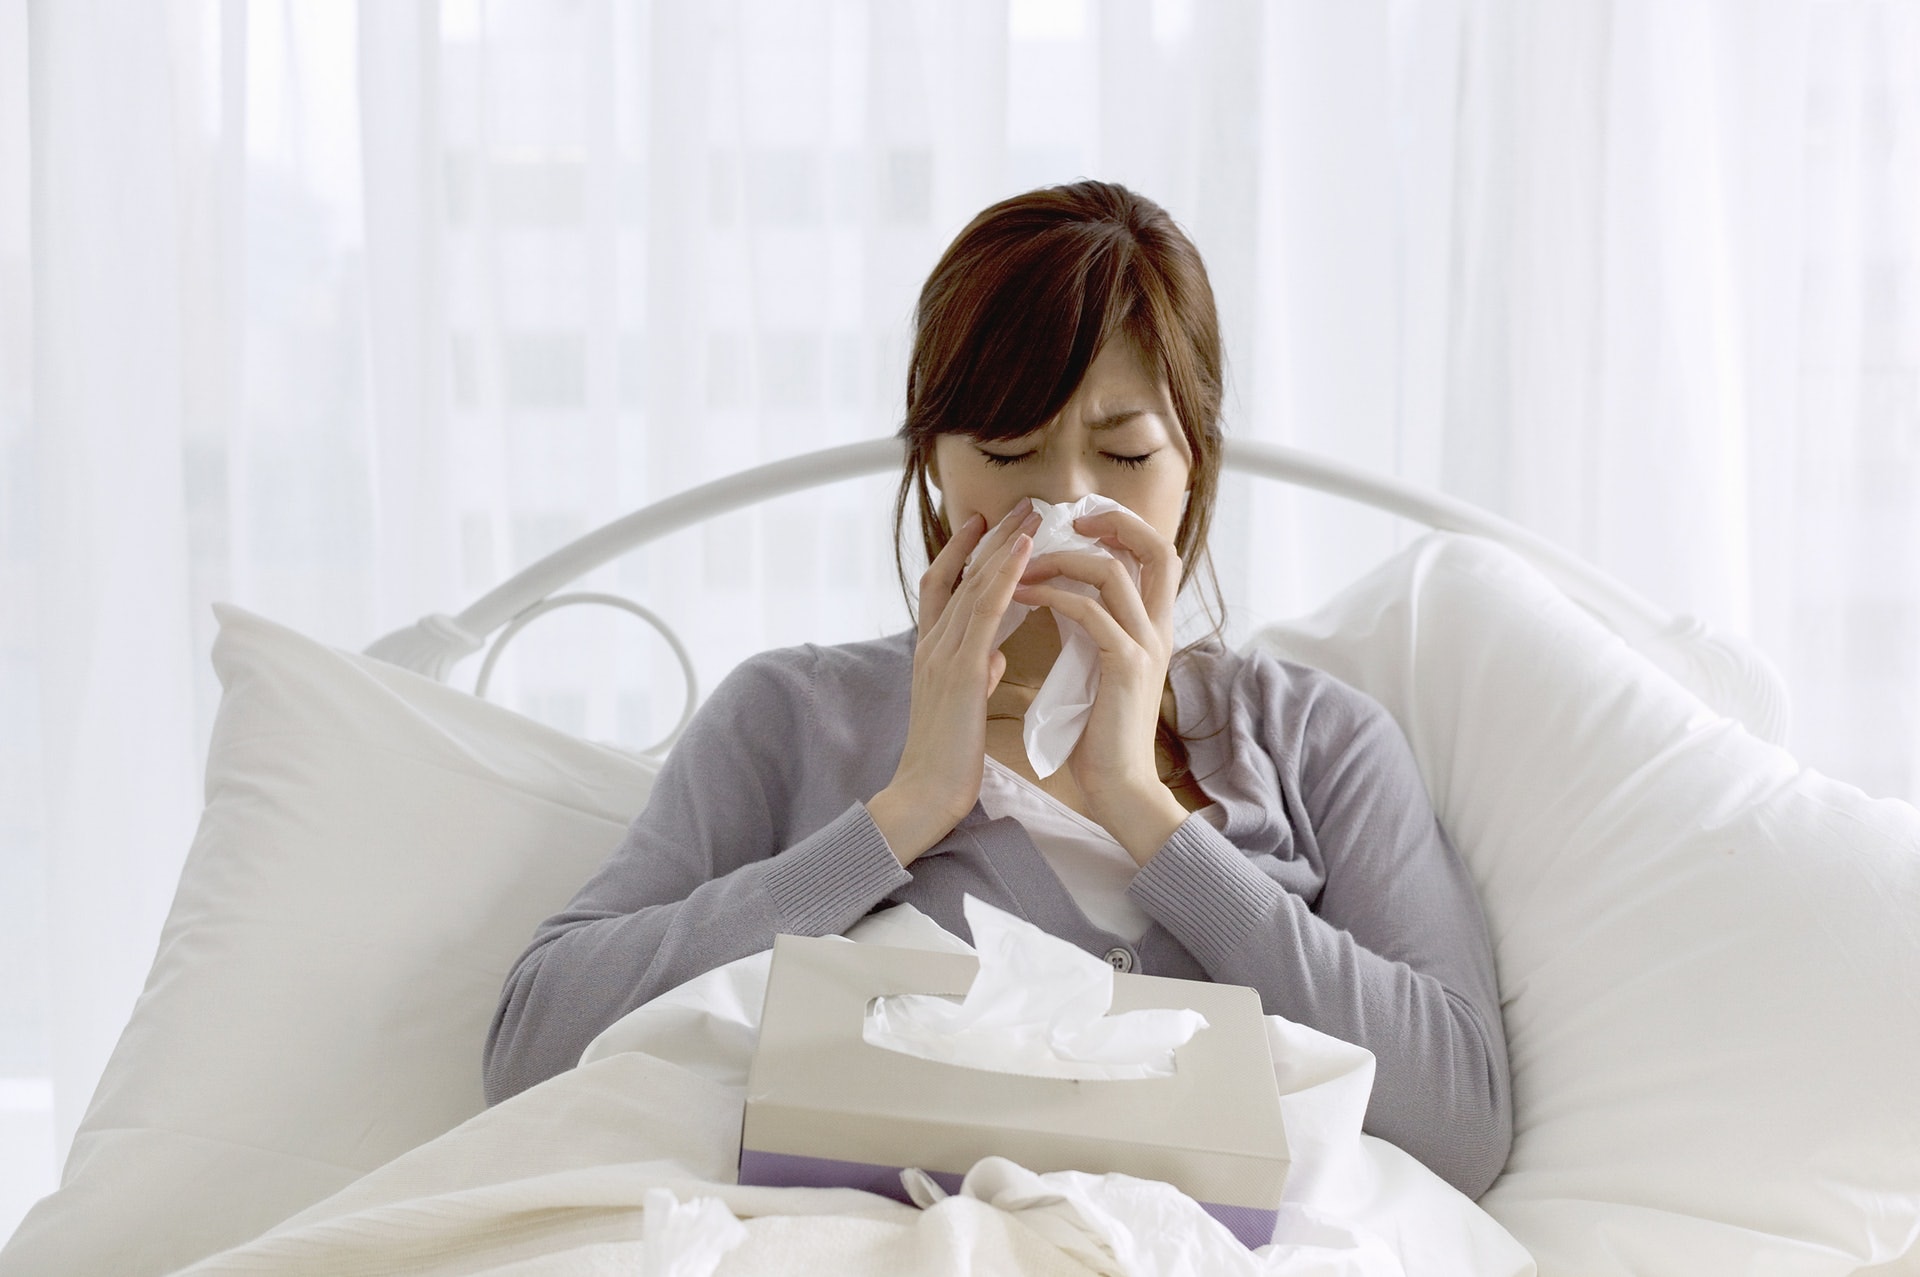 立秋較常見與氣管相關的問題，如鼻敏感、氣管敏感、咳嗽等。(VCG)